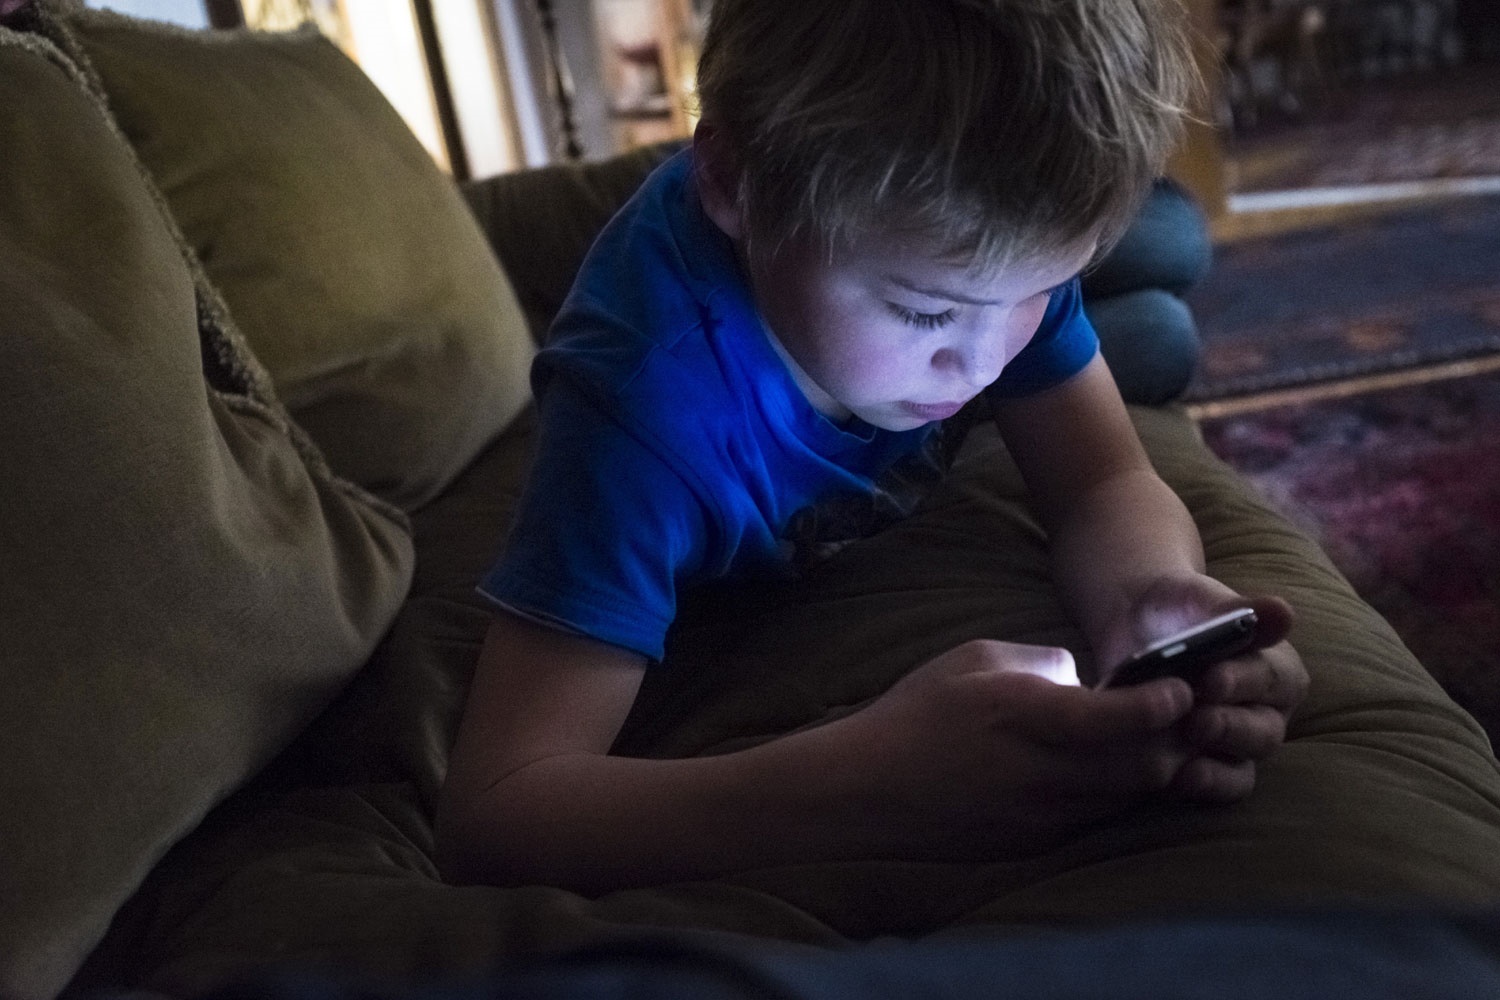 پیشنهاد ممنوعیت استفاده از گوشی موبایل توسط کودکان زیر ۱۳ سال